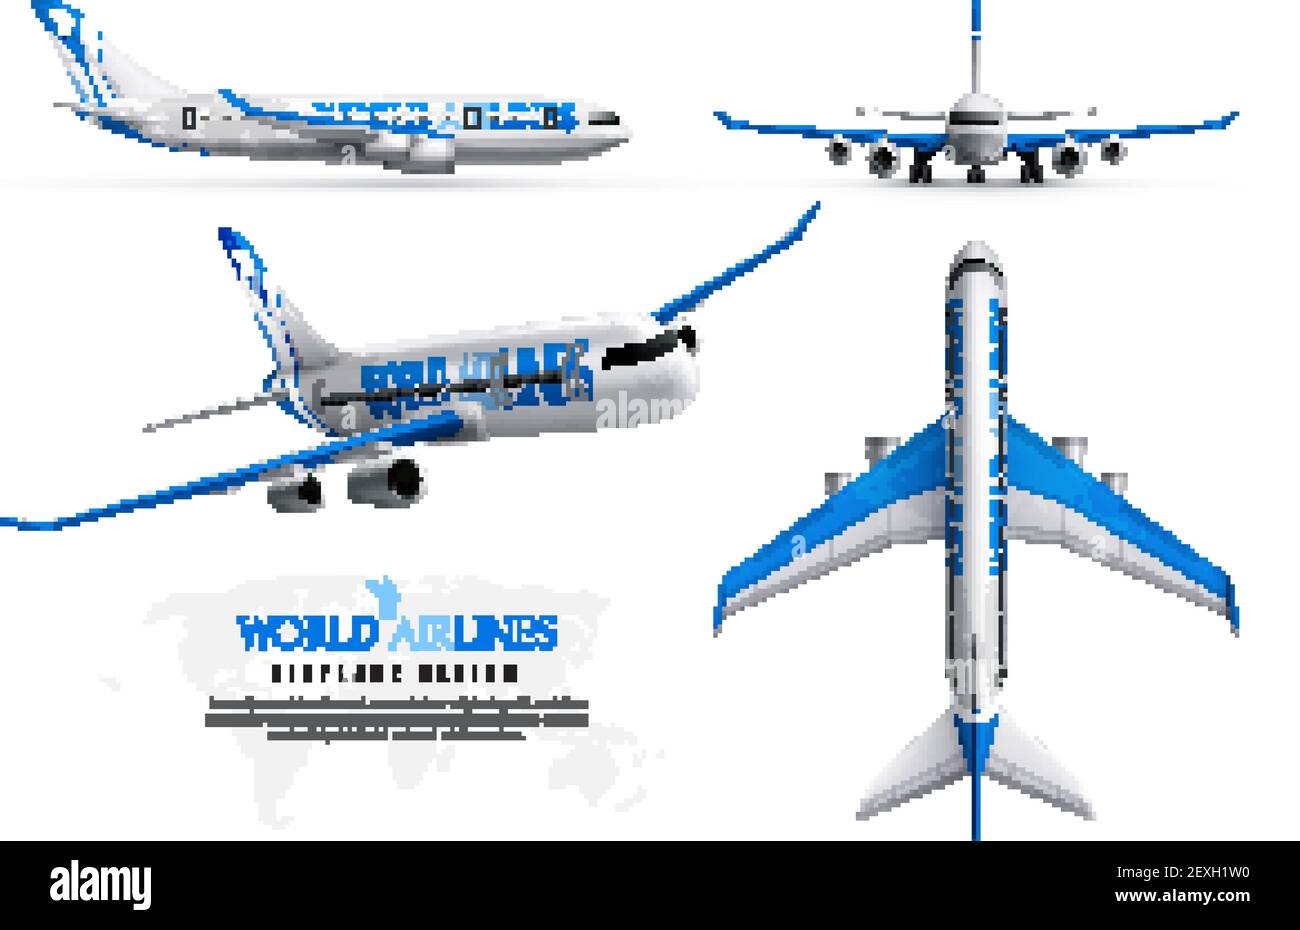 Flugzeug-Design realistische Identität Satz der Welt-Fluggesellschaften in  verschiedenen Zeigt isolierte Vektordarstellung an Stock-Vektorgrafik -  Alamy